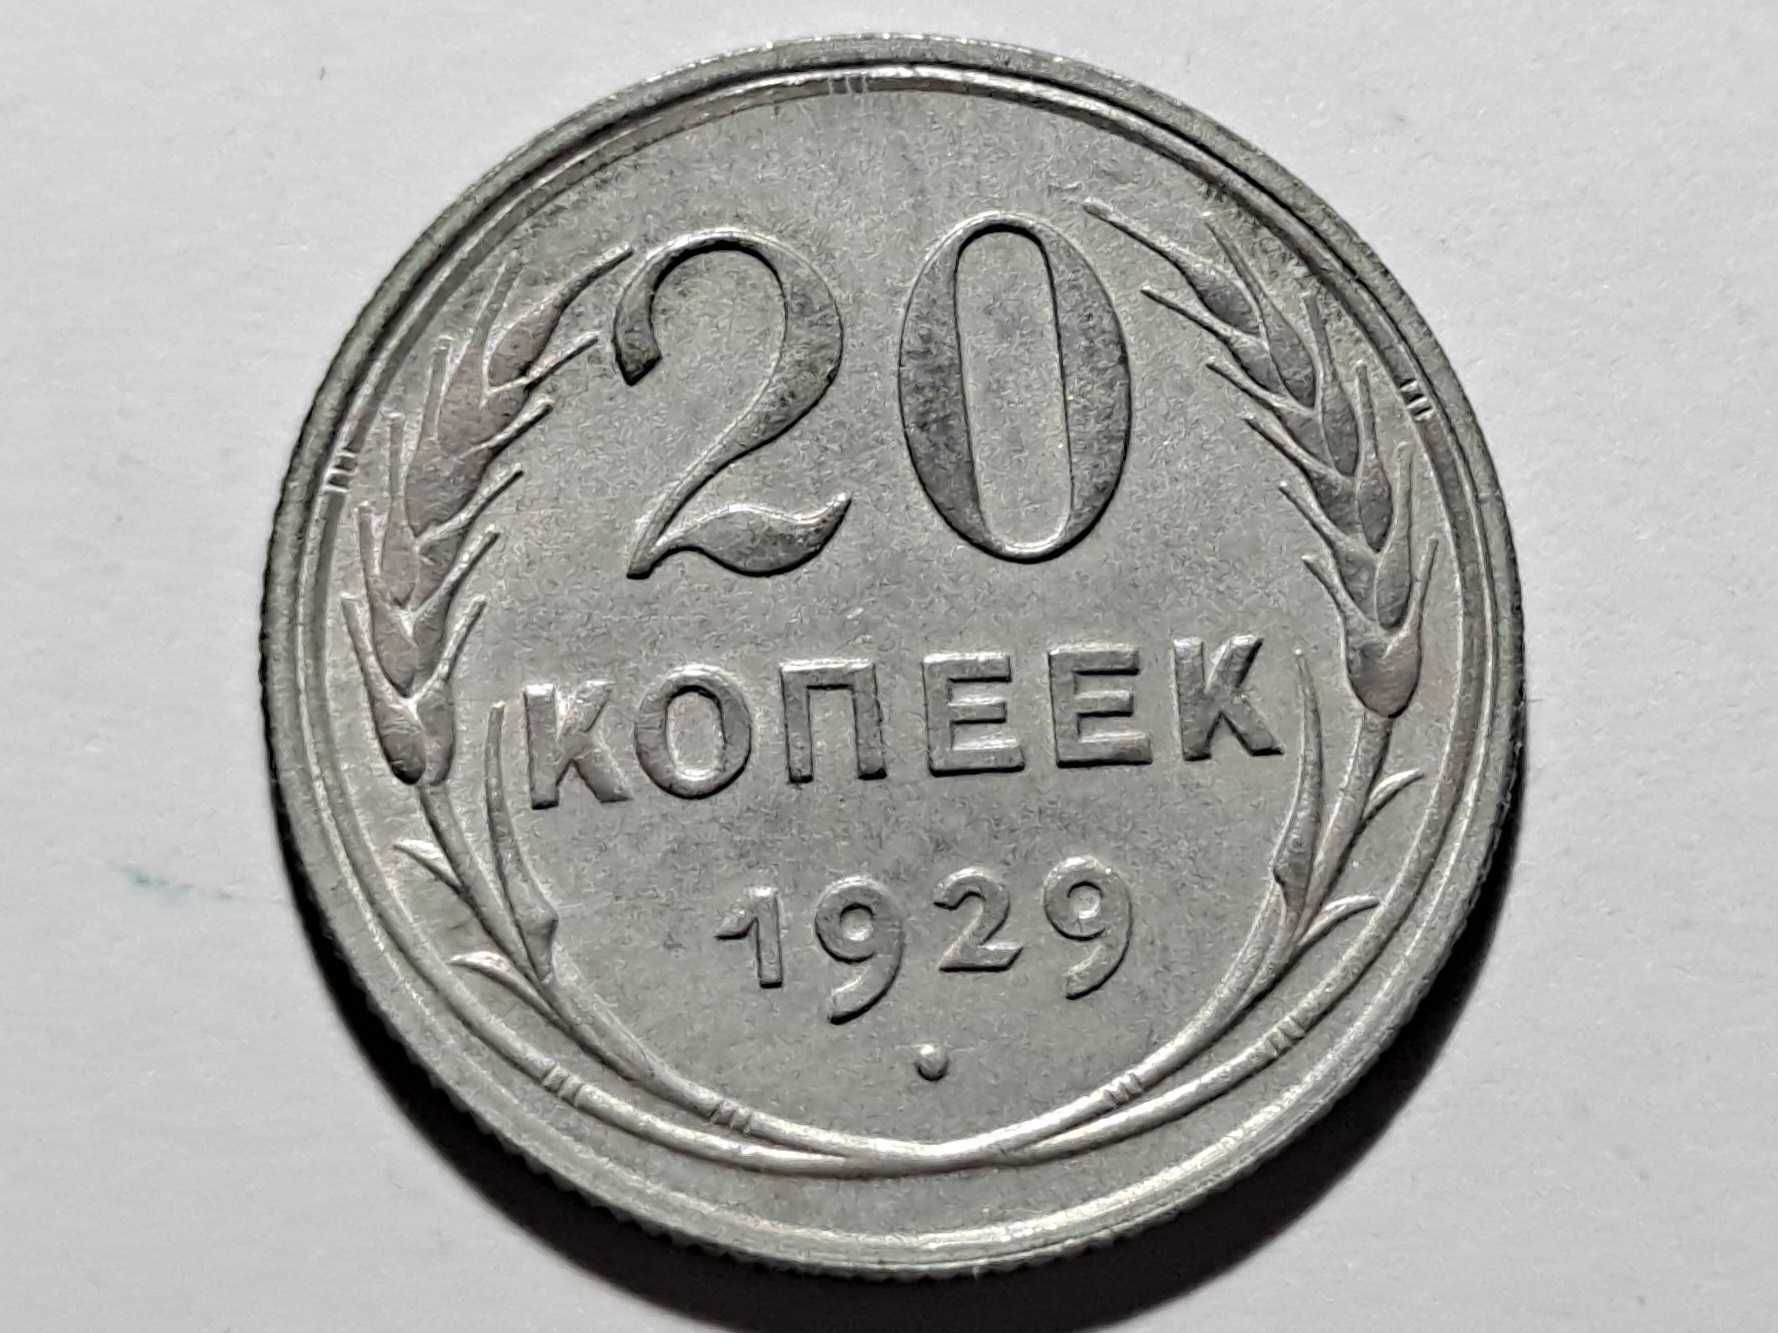 20 Kopiejek - ZSRR (Związek Radziecki) - 1929 r. - Ag 500 -